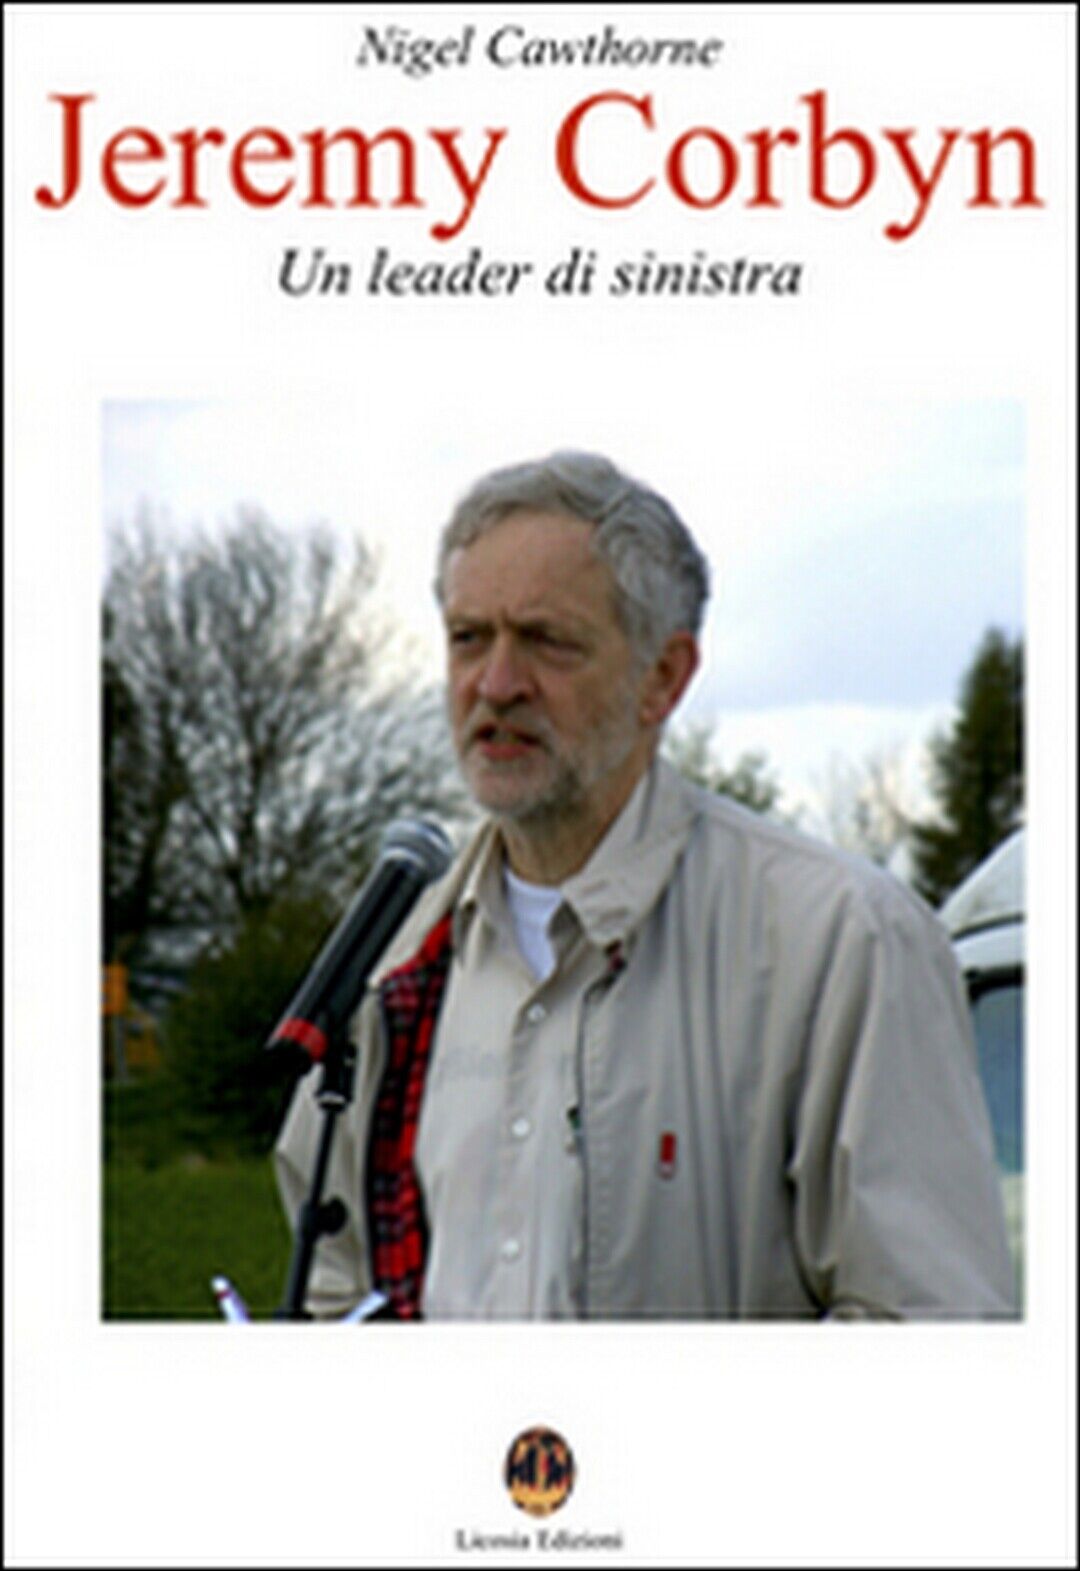 Jeremy Corbyn. Un leader di sinistra- Nigel Cawthorne, N. Mastrolia,  2015